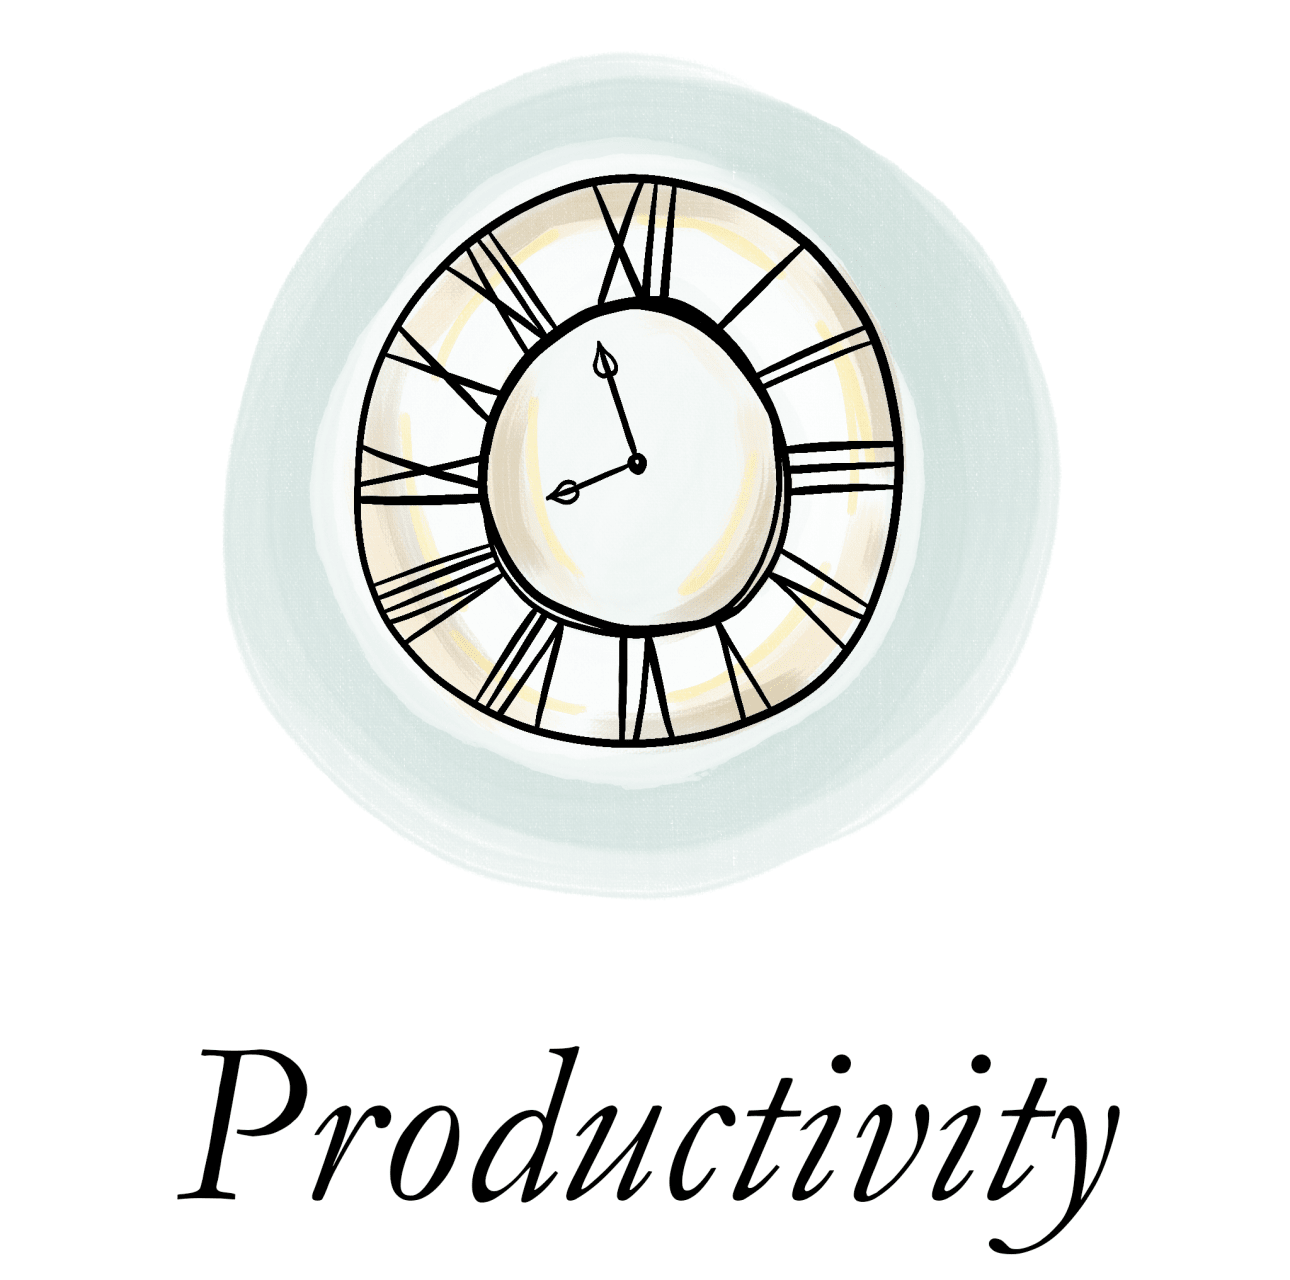 Productivity